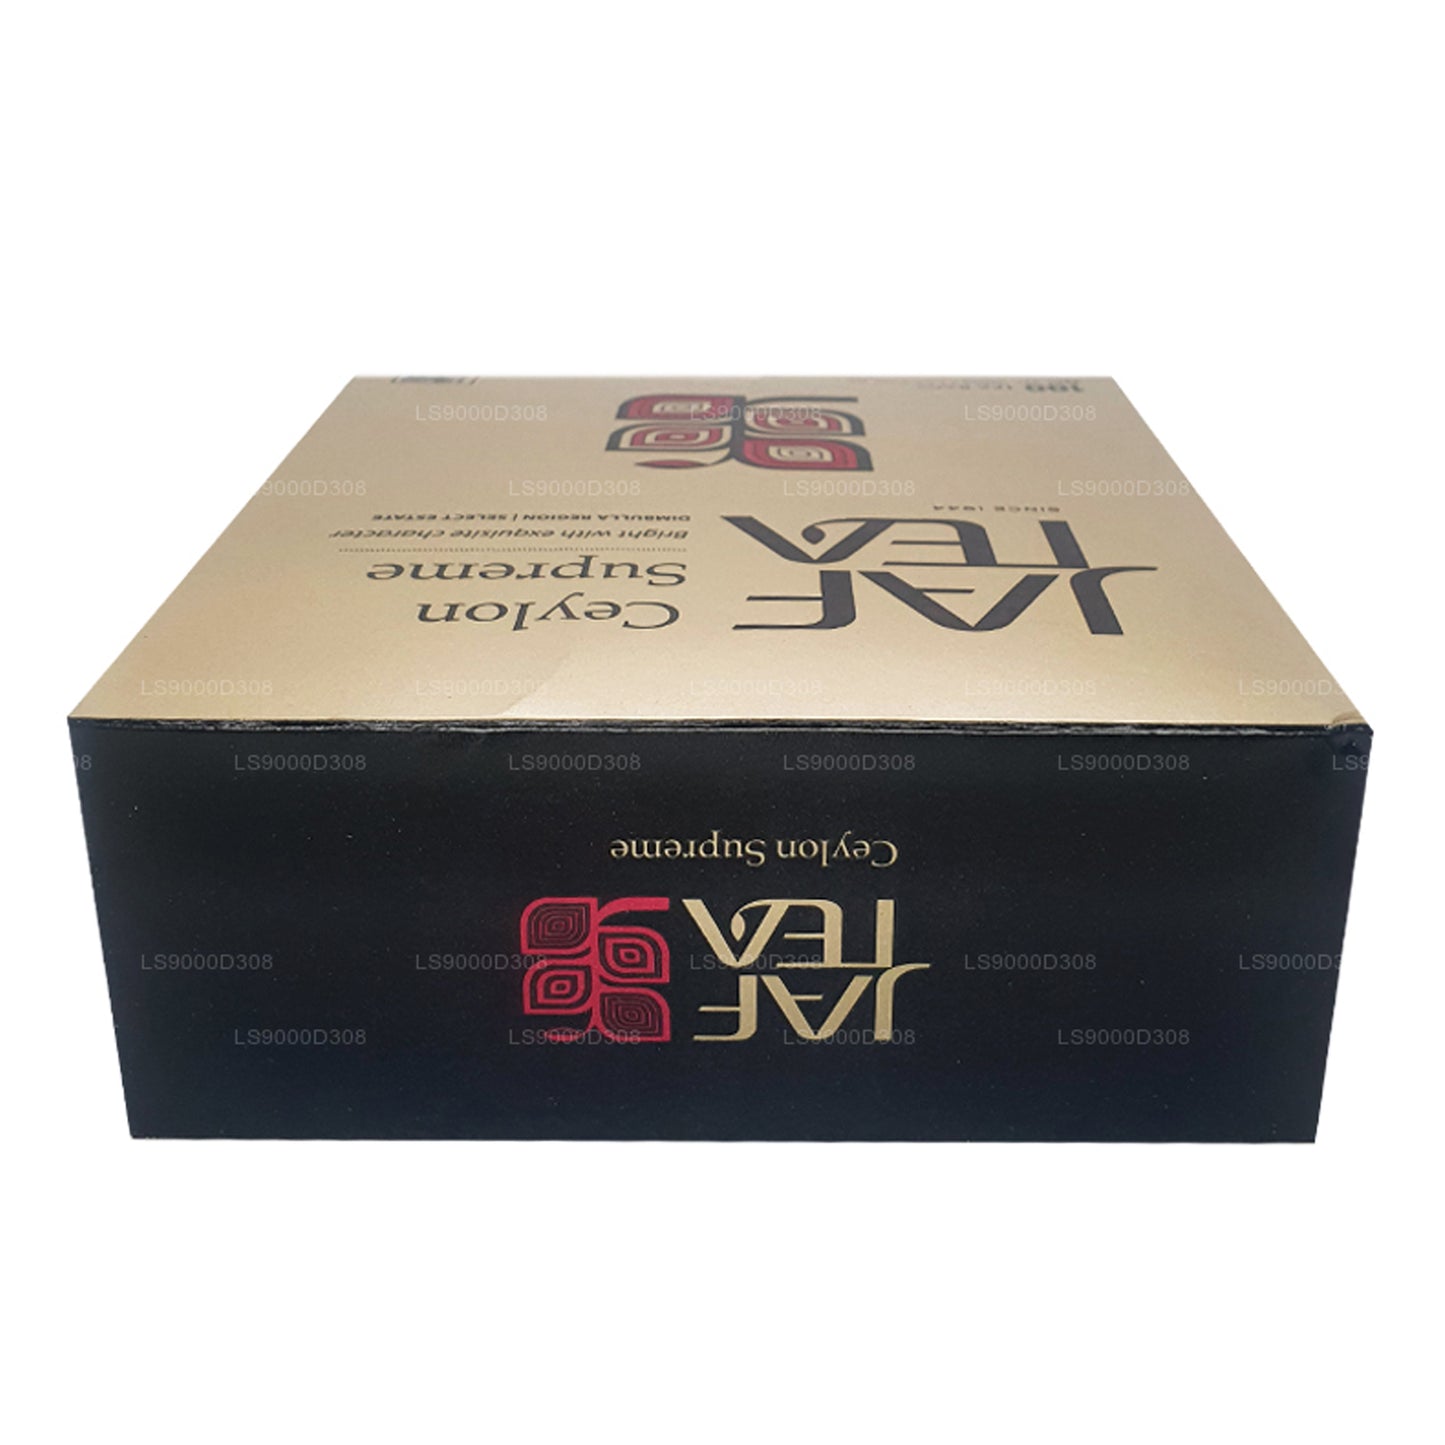 Jaf Tea 클래식 골드 컬렉션 실론 슈프림 100 티백 스트링 및 태그 (200g)